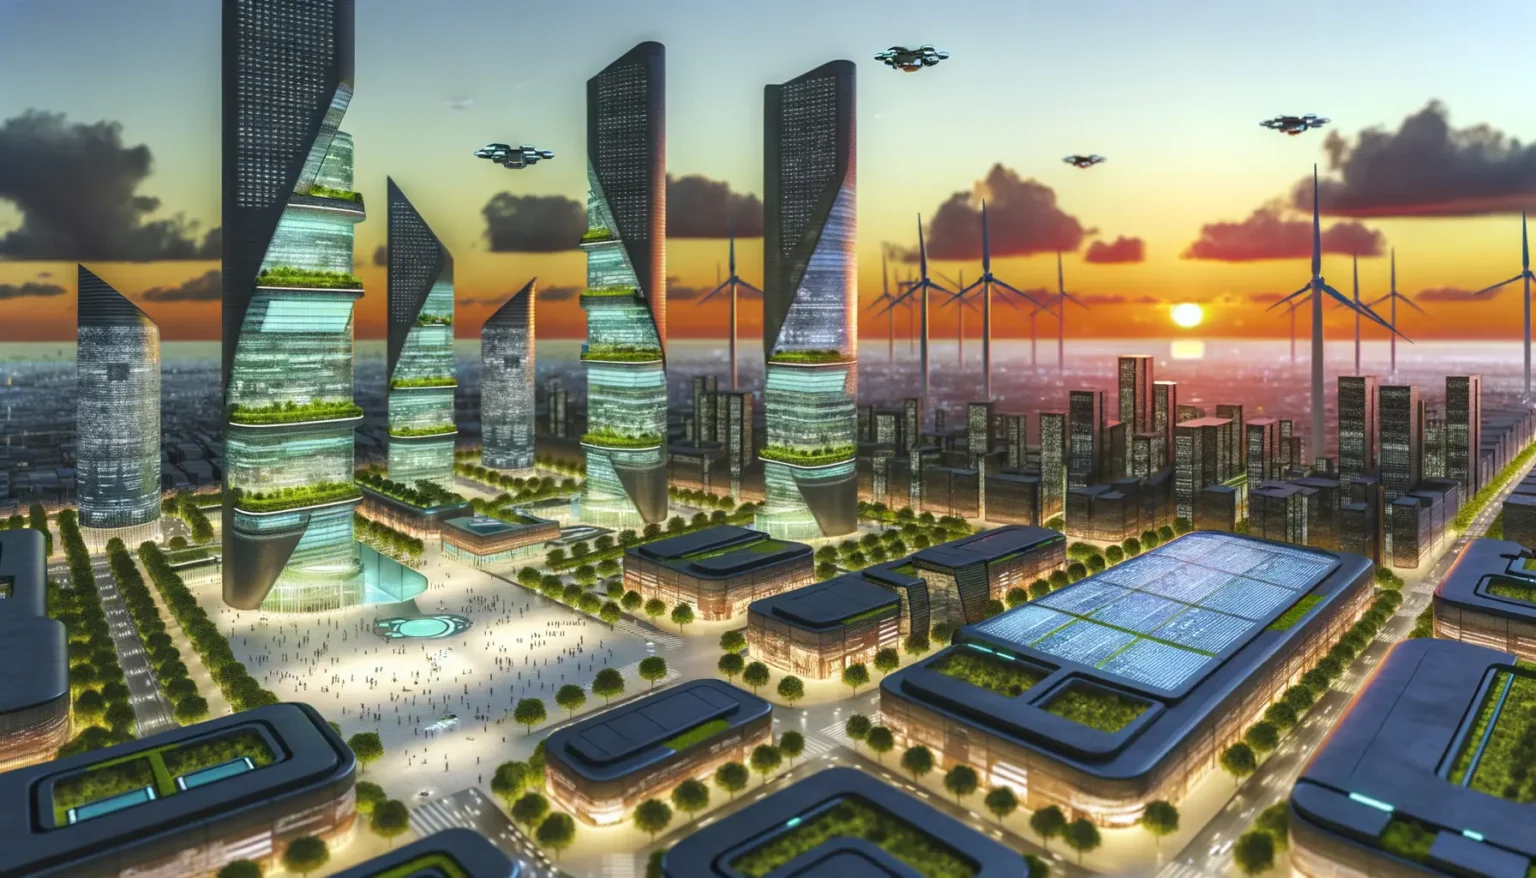 Futuristische Stadtansicht bei Sonnenuntergang mit Hochhäusern und integrierter grüner Vegetation, Windkraftanlagen am Horizont und fliegenden Fahrzeugen im Himmel.